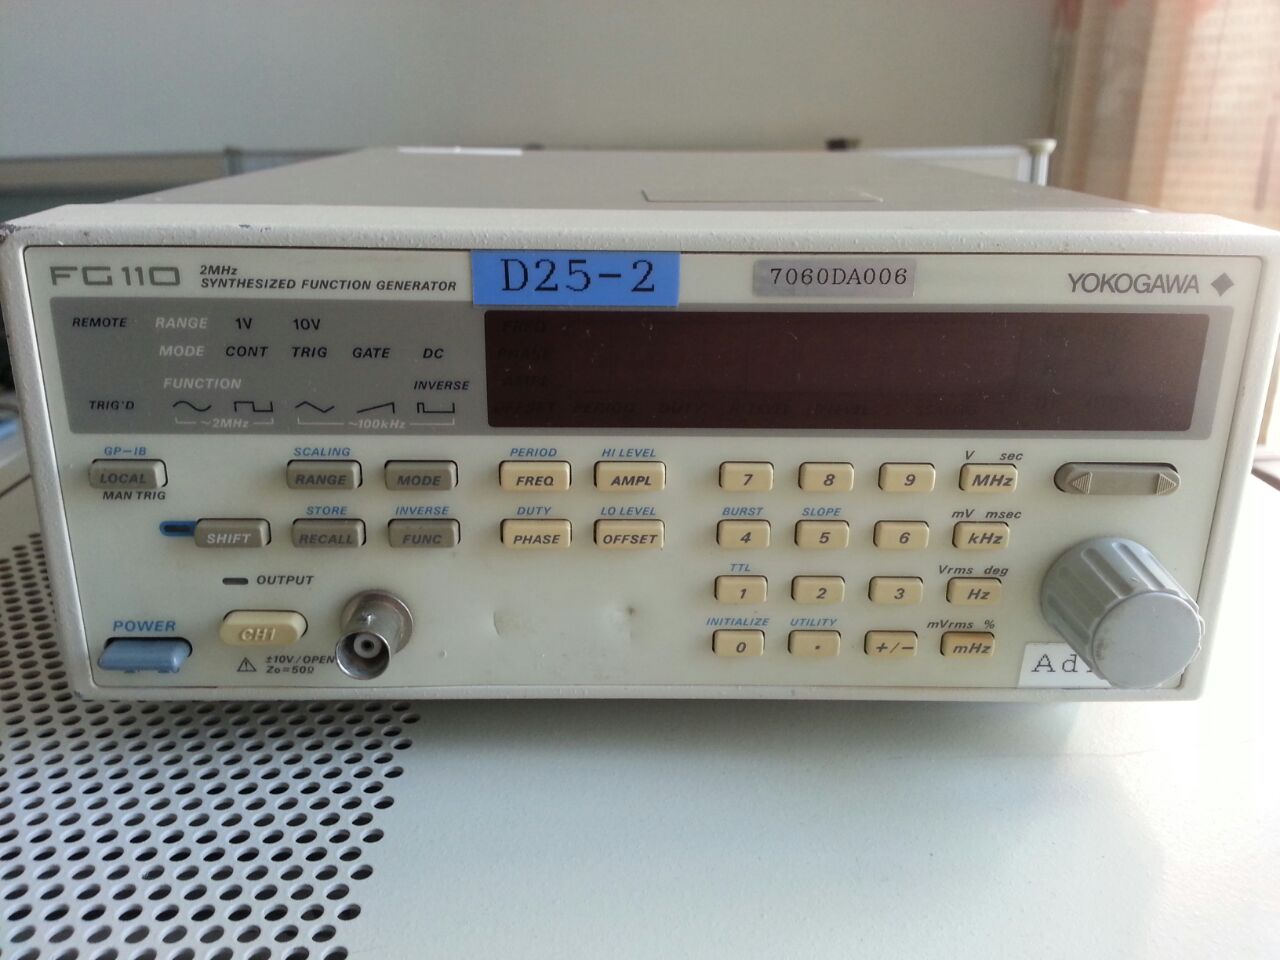 日本横河FG110函数信号发生器